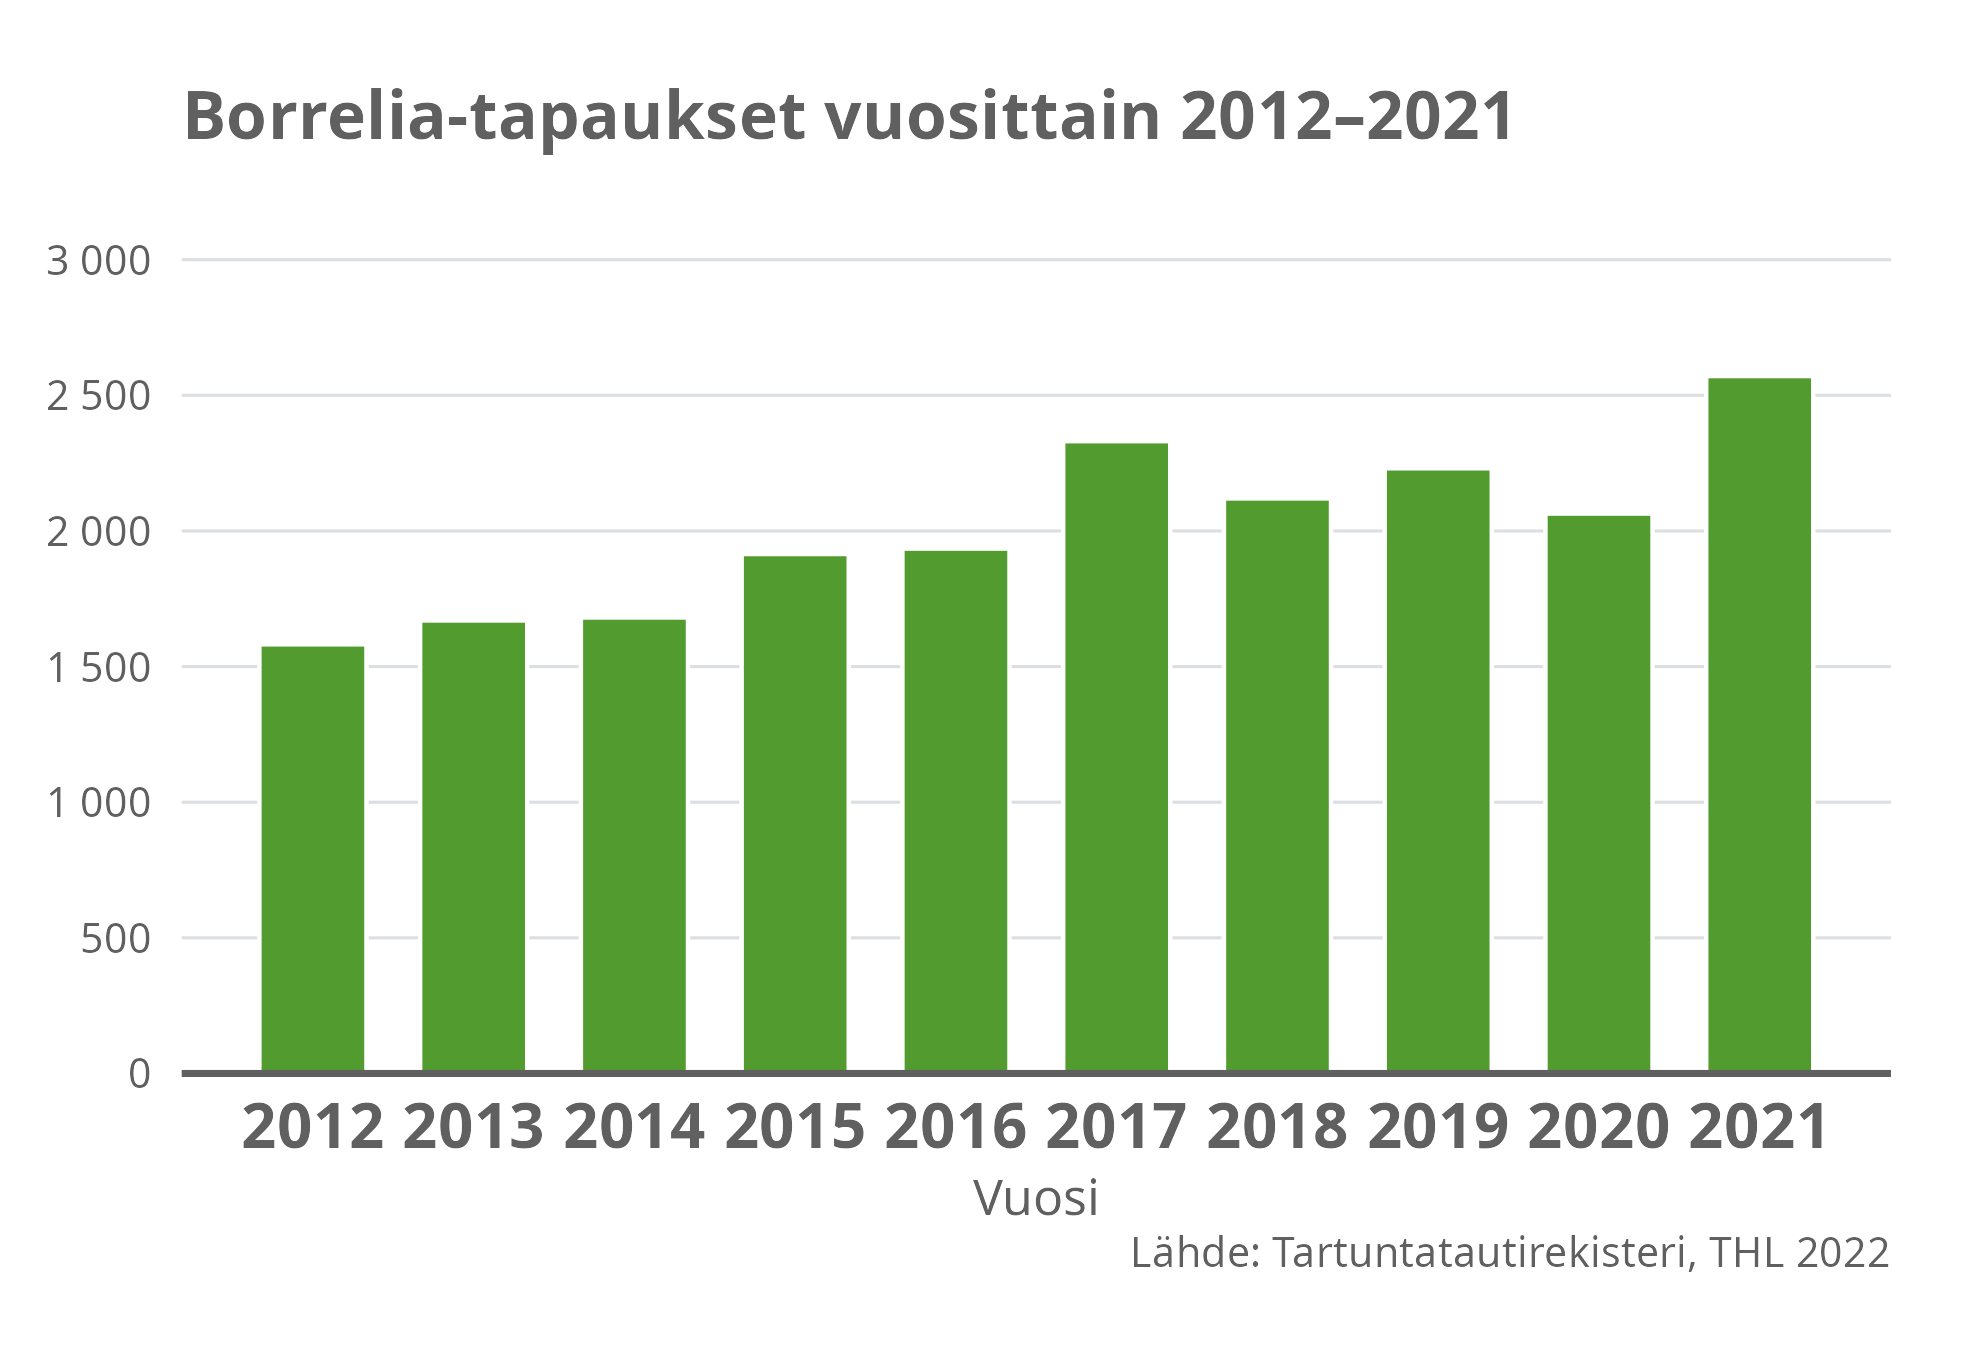 Borrelia-tapaukset vuosittain 2012-2021.